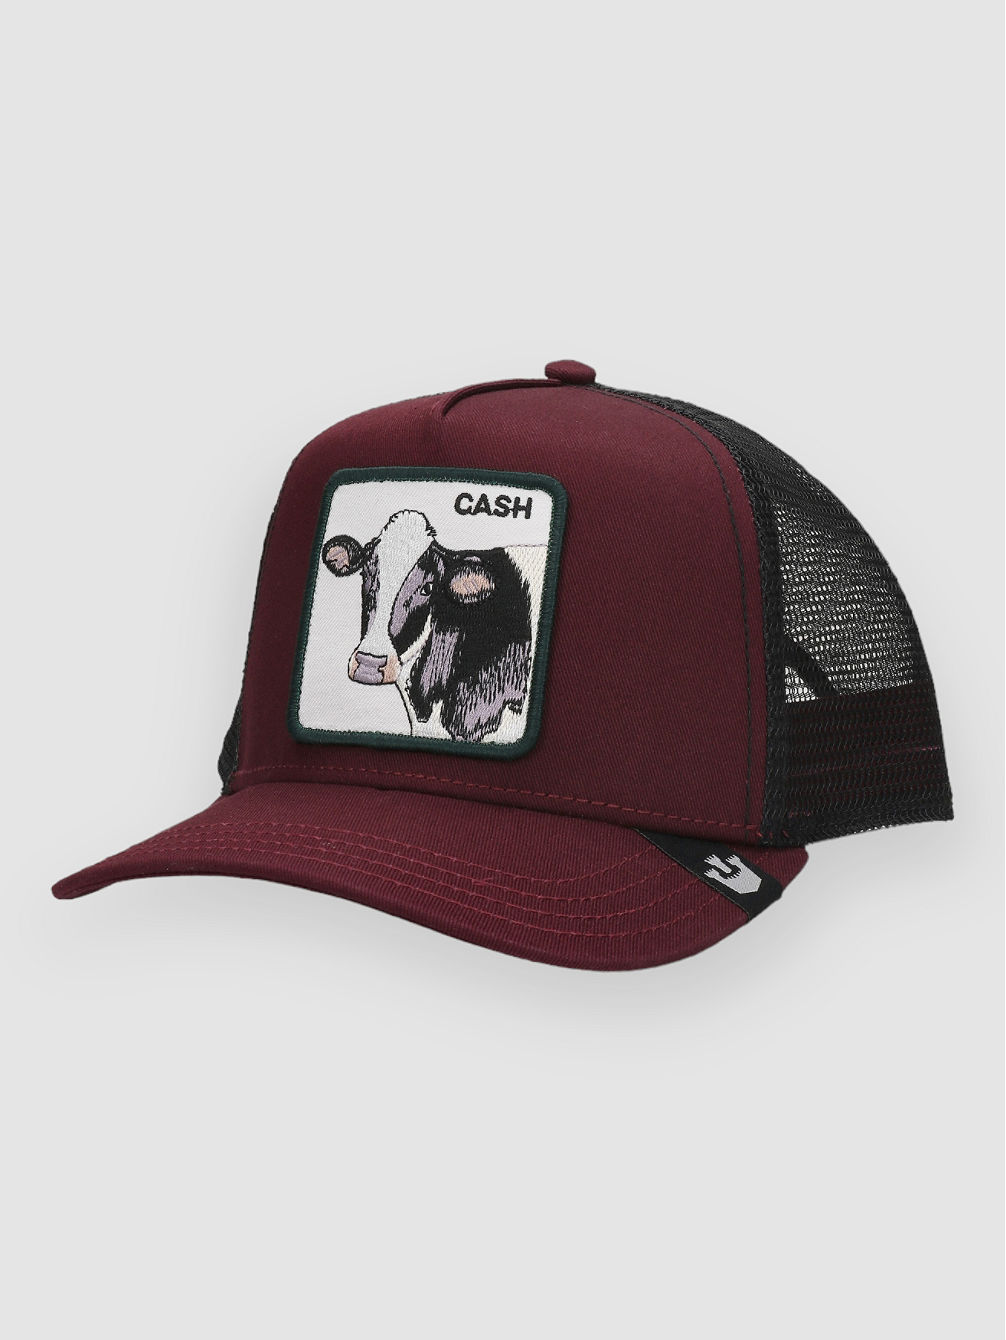 The Cash Cow Cap